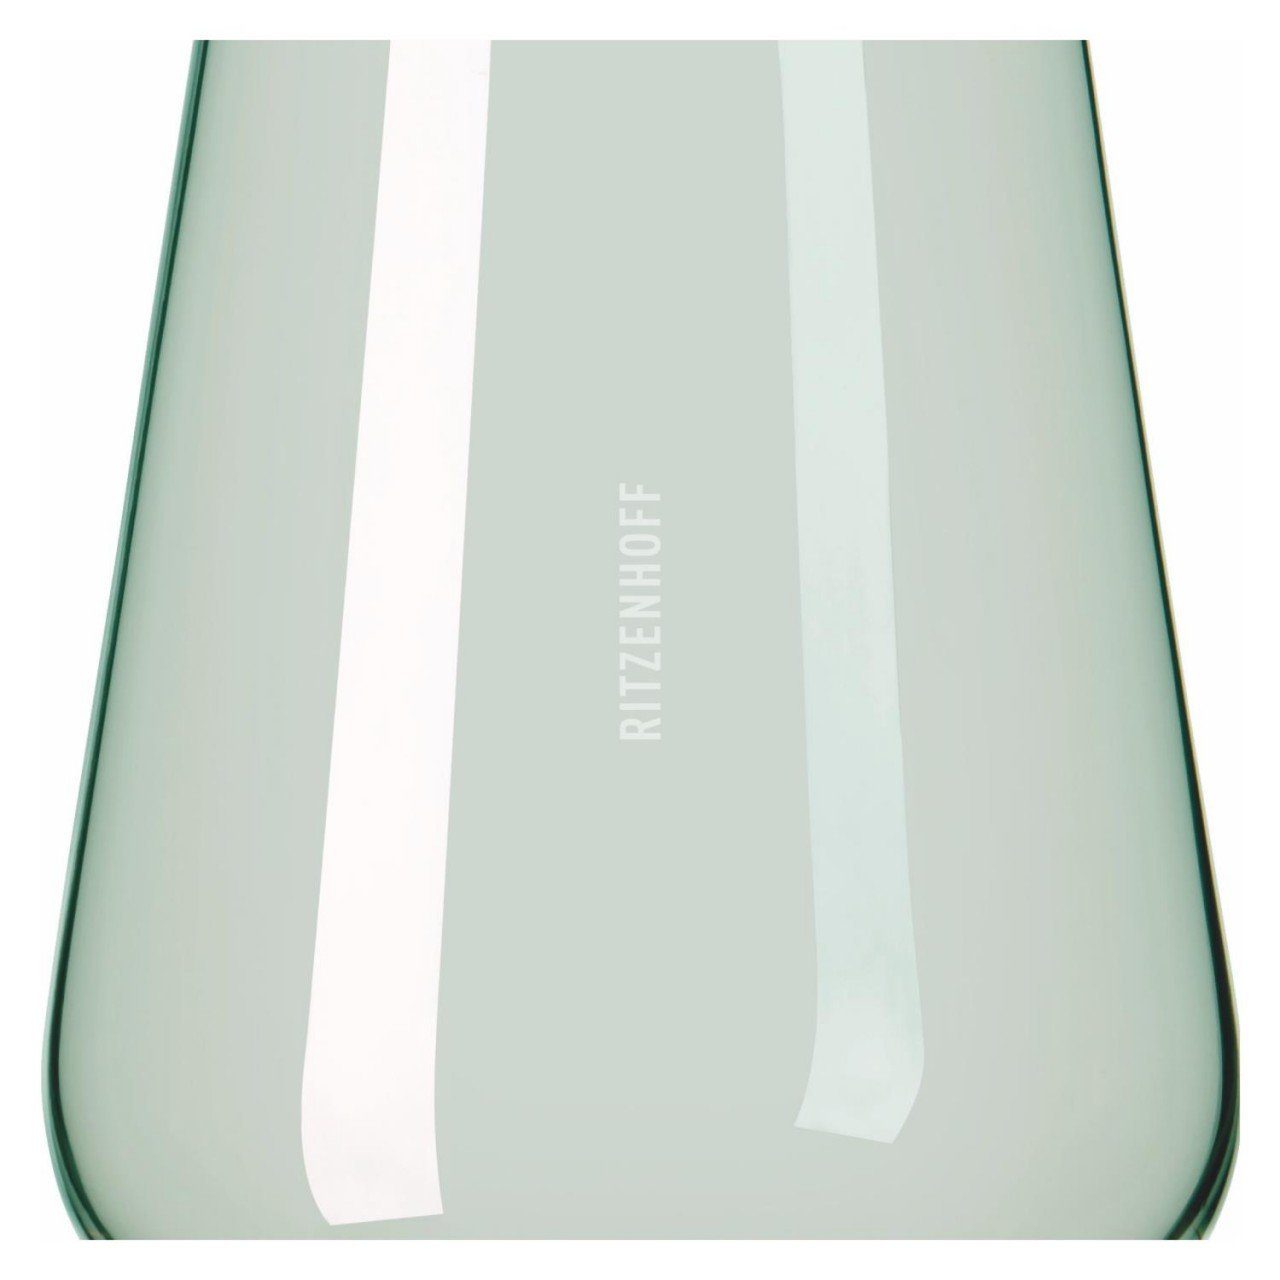 Ritzenhoff Glas Glas, H:12.4cm Fjordlicht, Glas Grün D:9.3cm